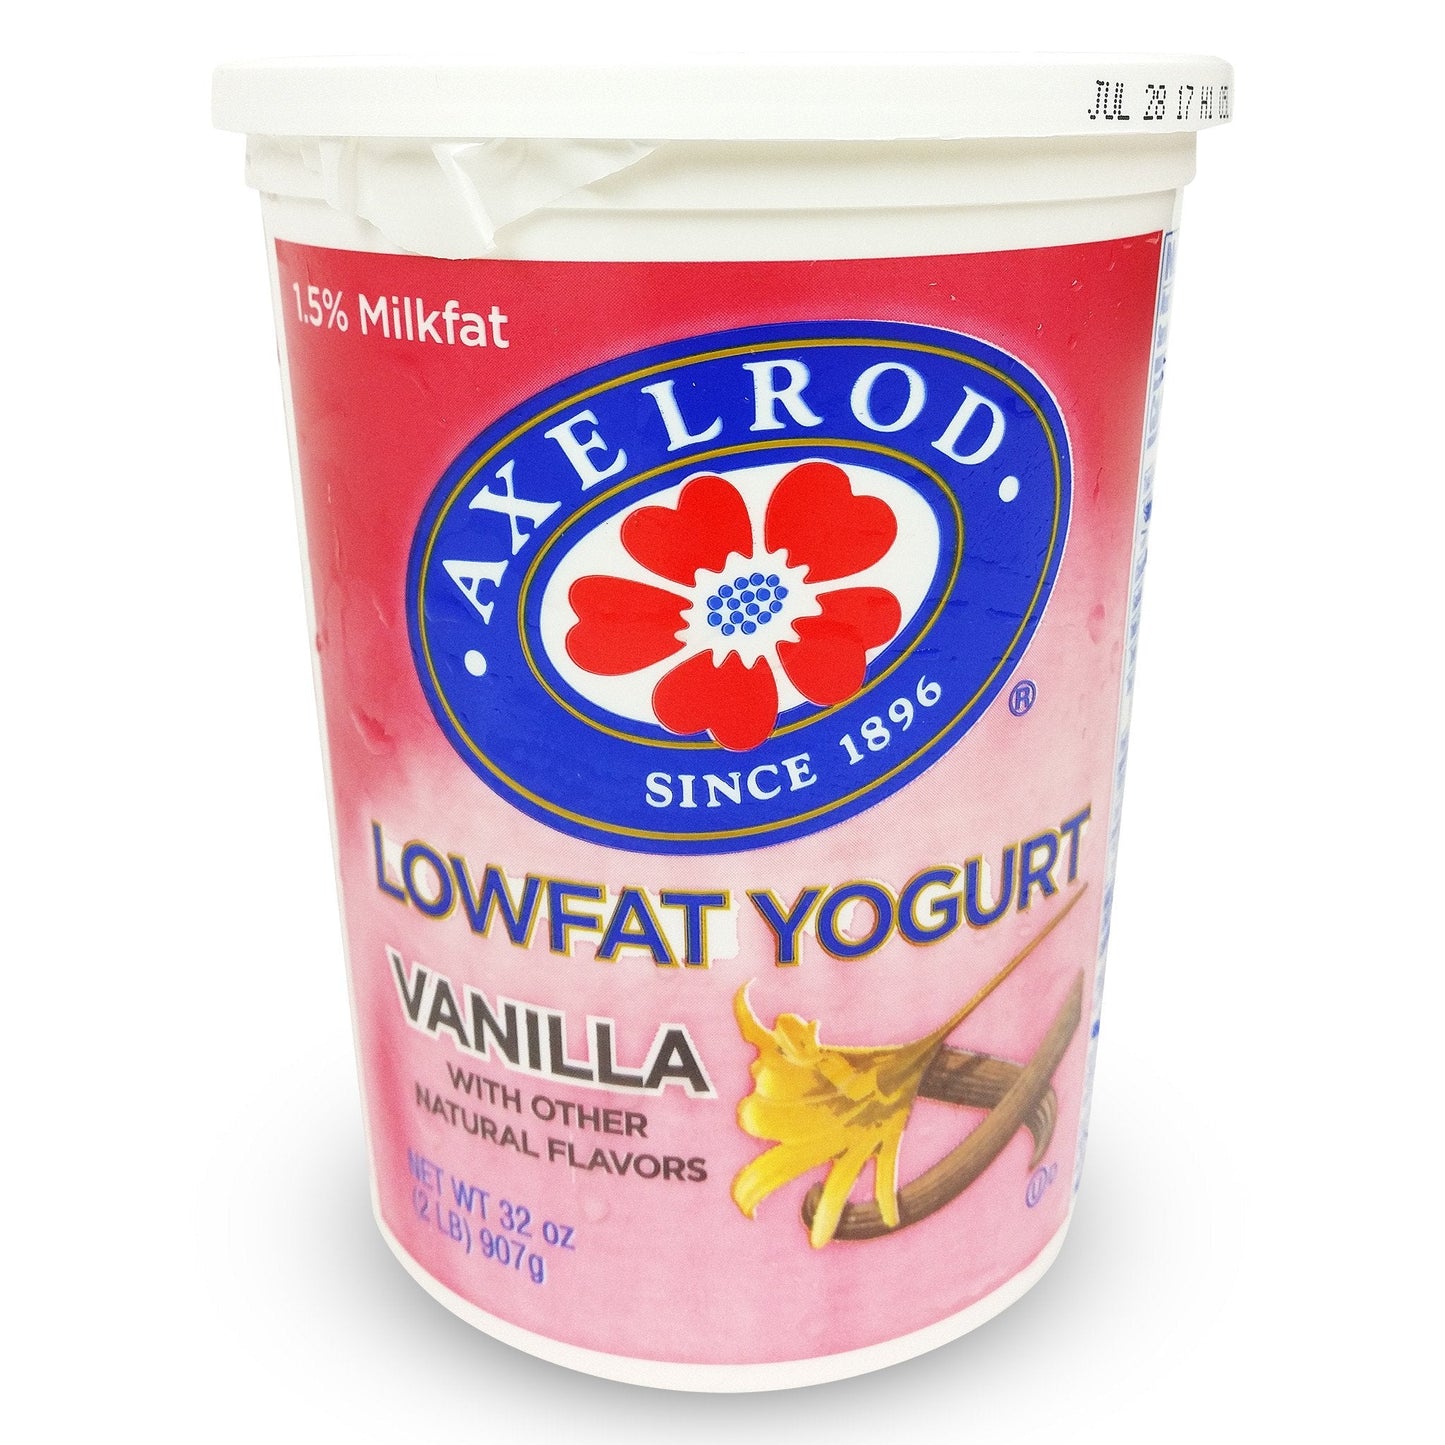 Lowfat Yogurt Vanilla